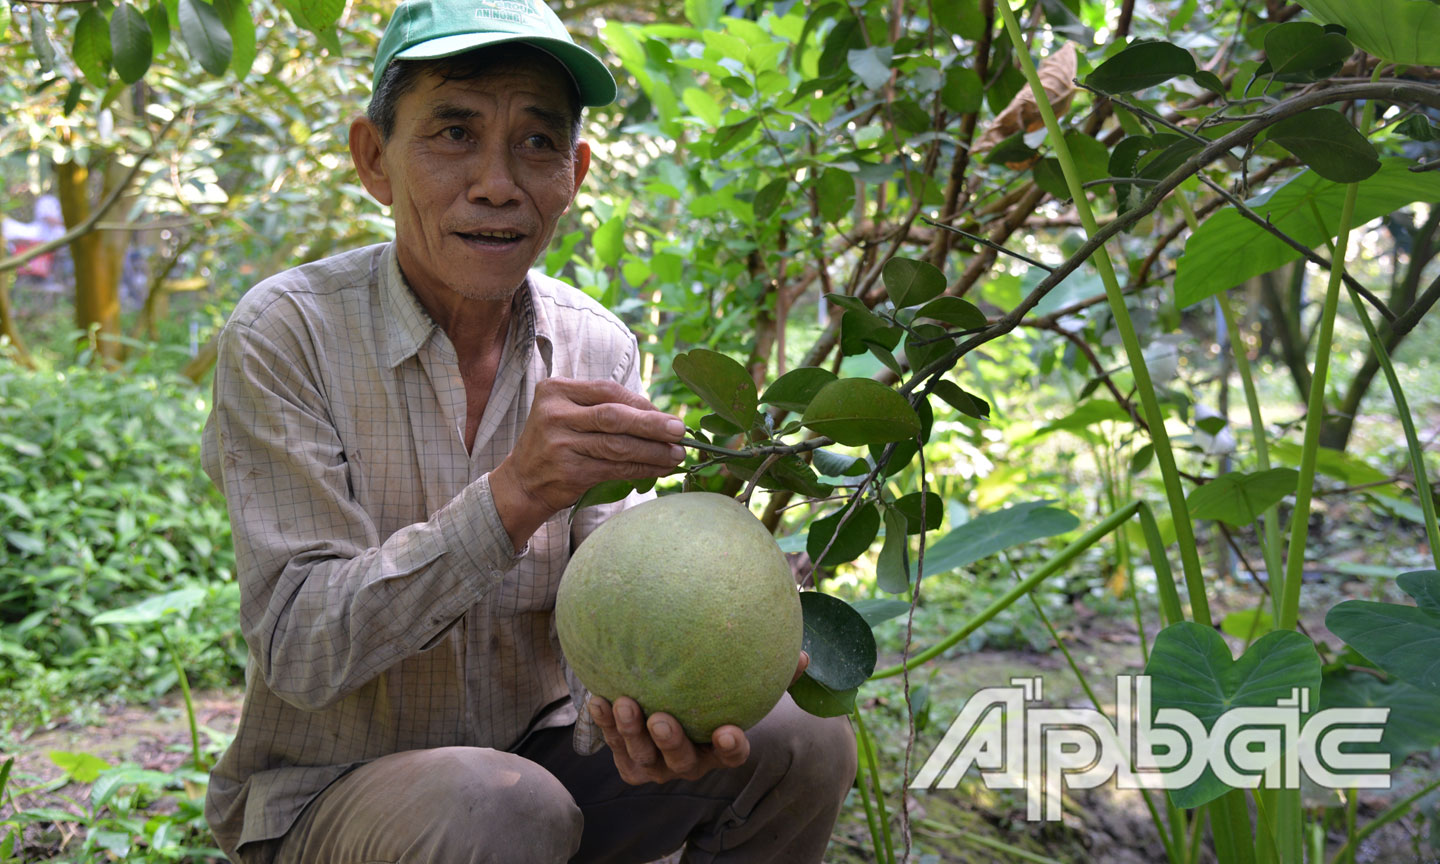 Nhờ áp dụng khoa học - kỹ thuật vào chăm sóc, vườn cây ăn trái của chú Châu cho hiệu quả kinh tế khá cao.